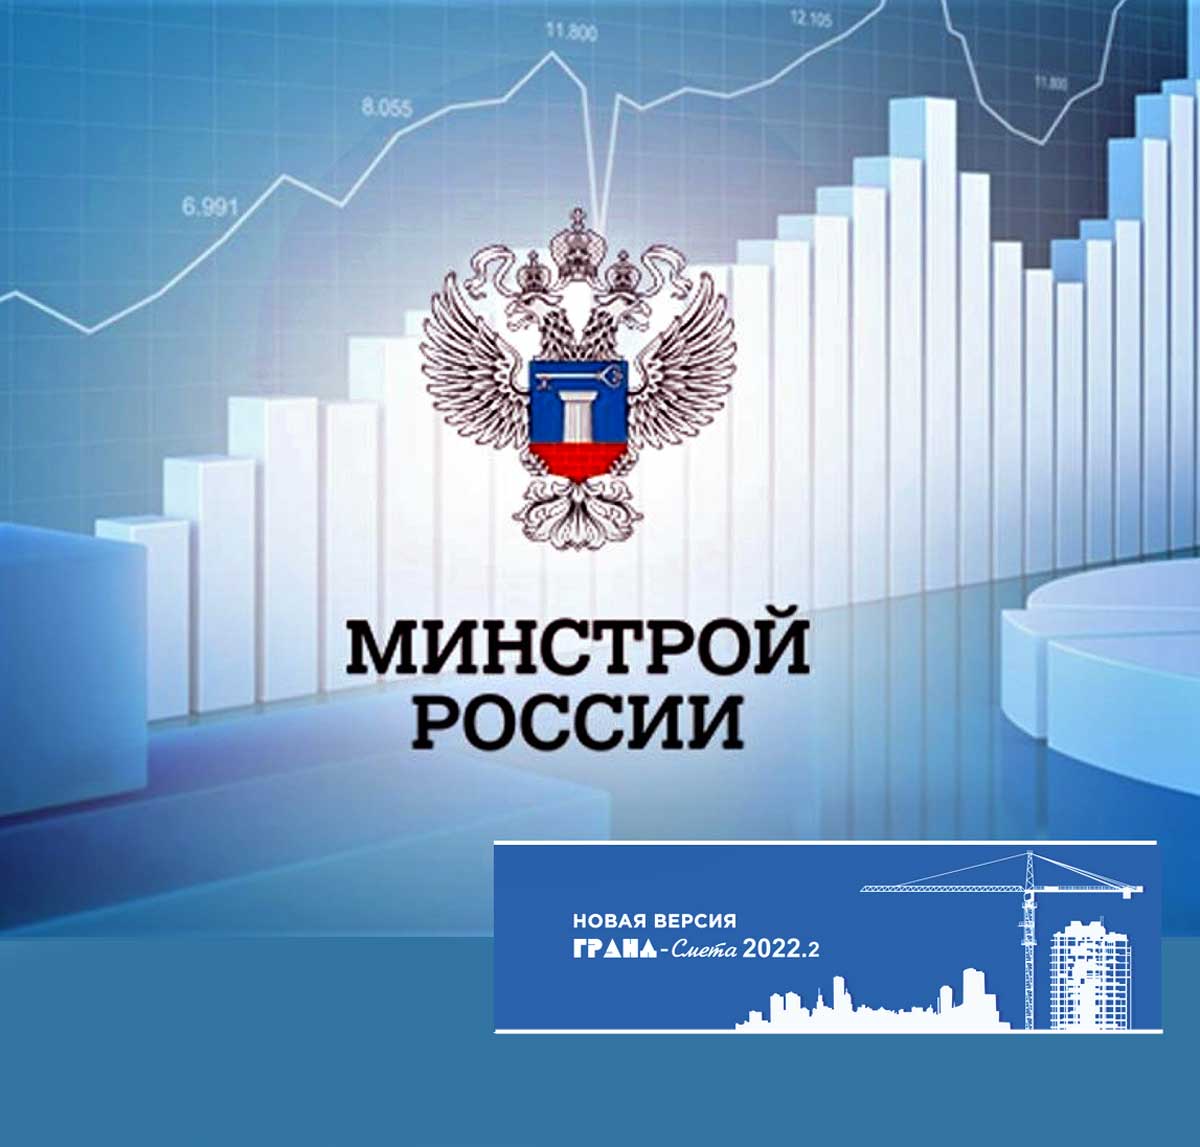 Реформа ценообразования в России продолжается